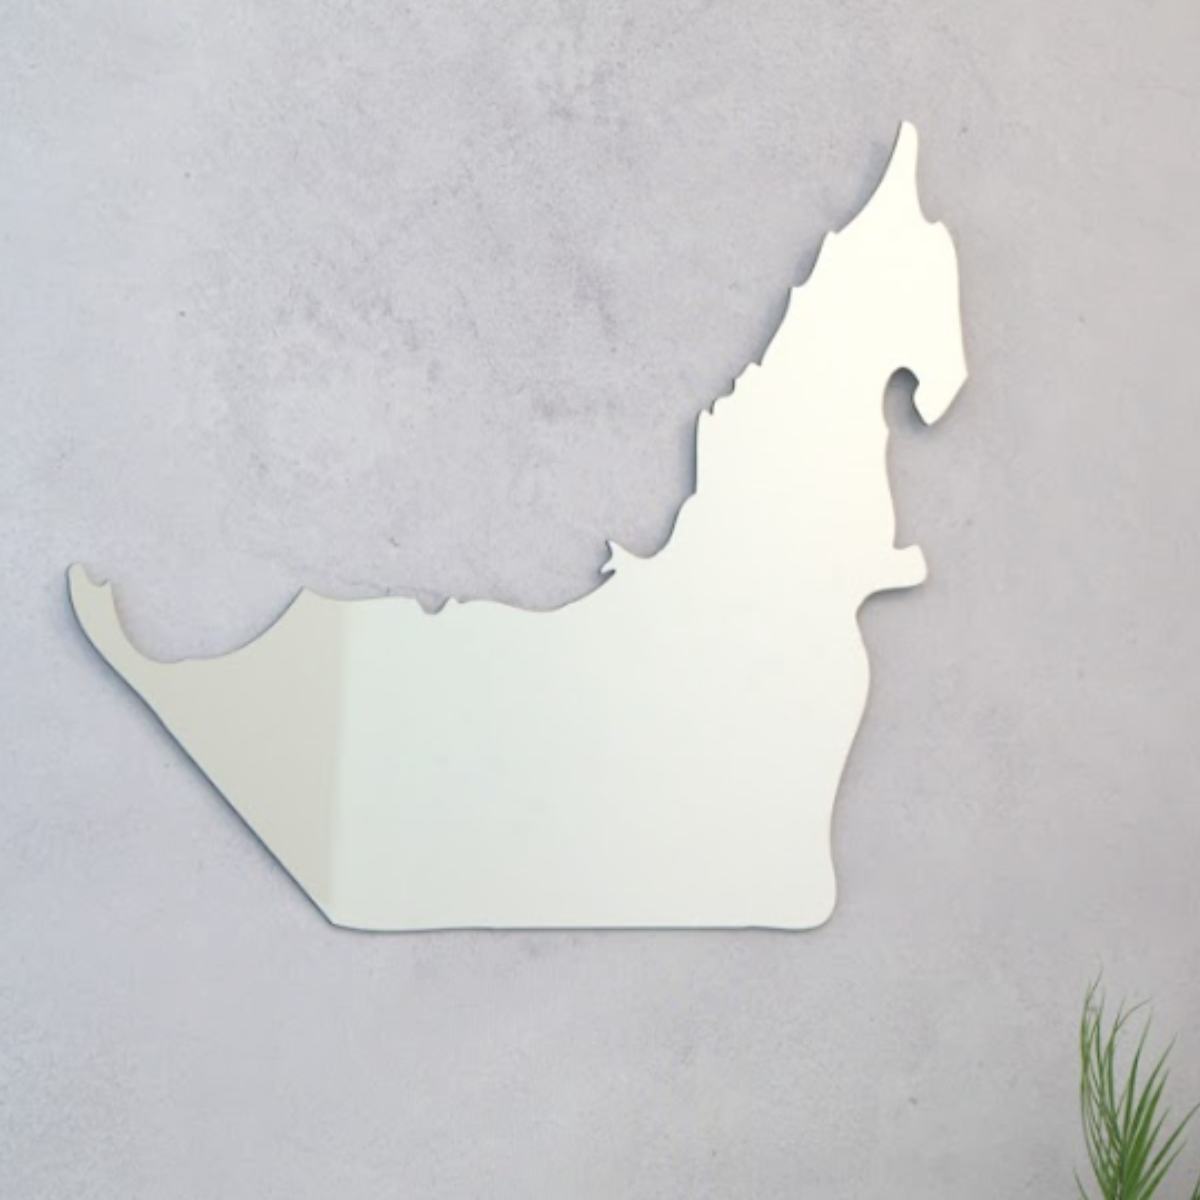 مرآة خريطة الإمارات العربية المتحدة